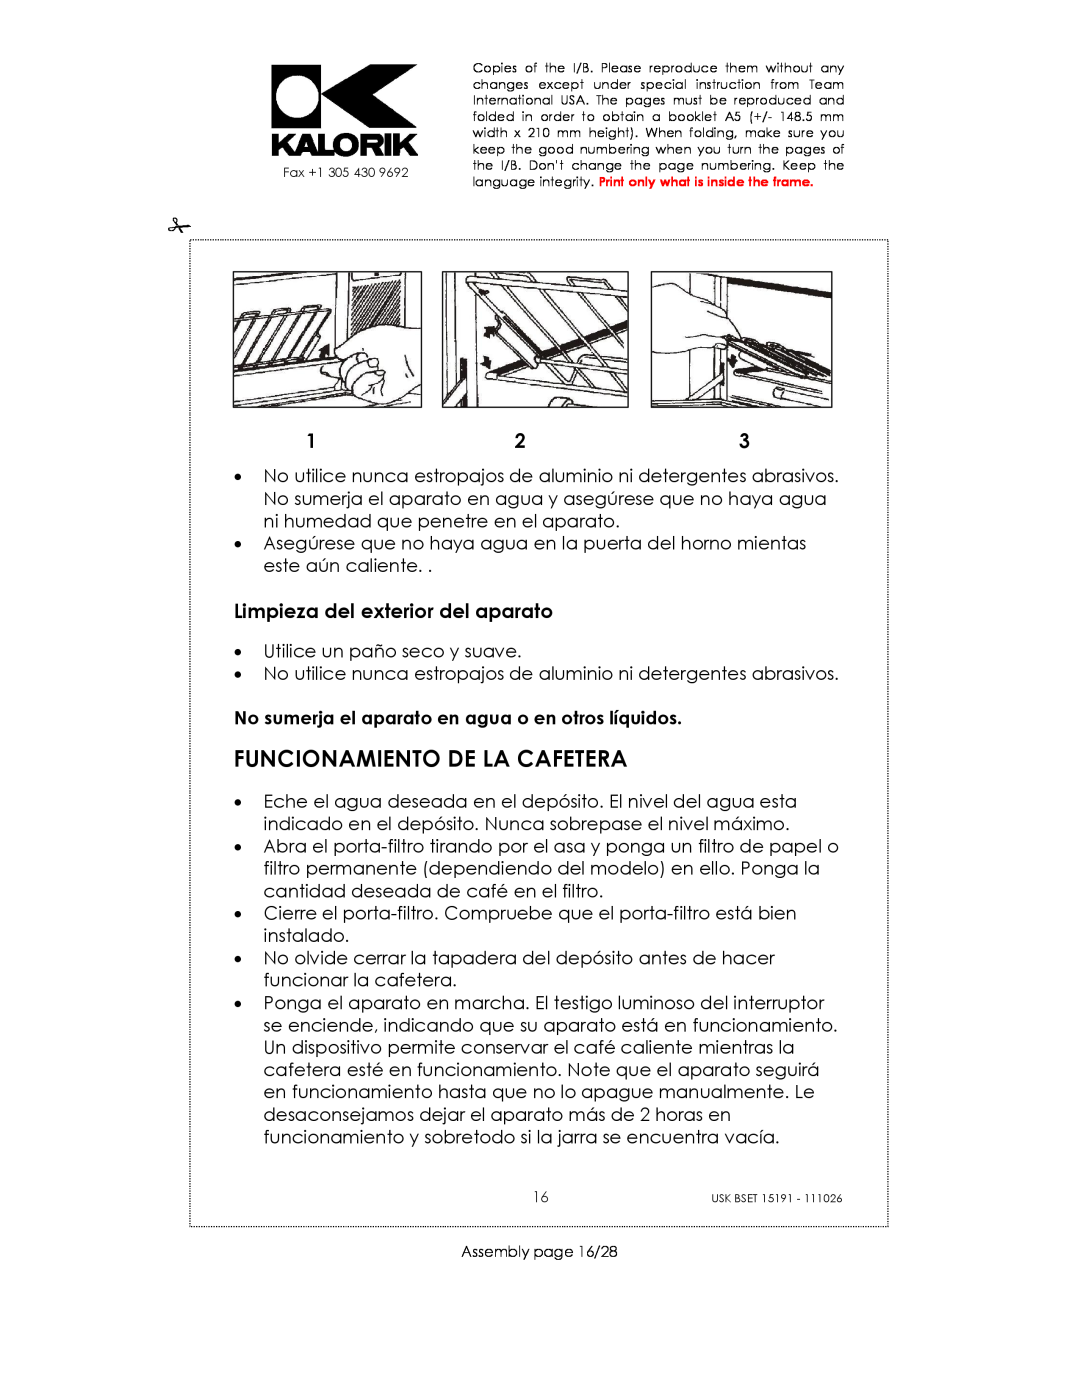 Kalorik USK BSET 15191 manual Funcionamiento De La Cafetera, Limpieza del exterior del aparato 